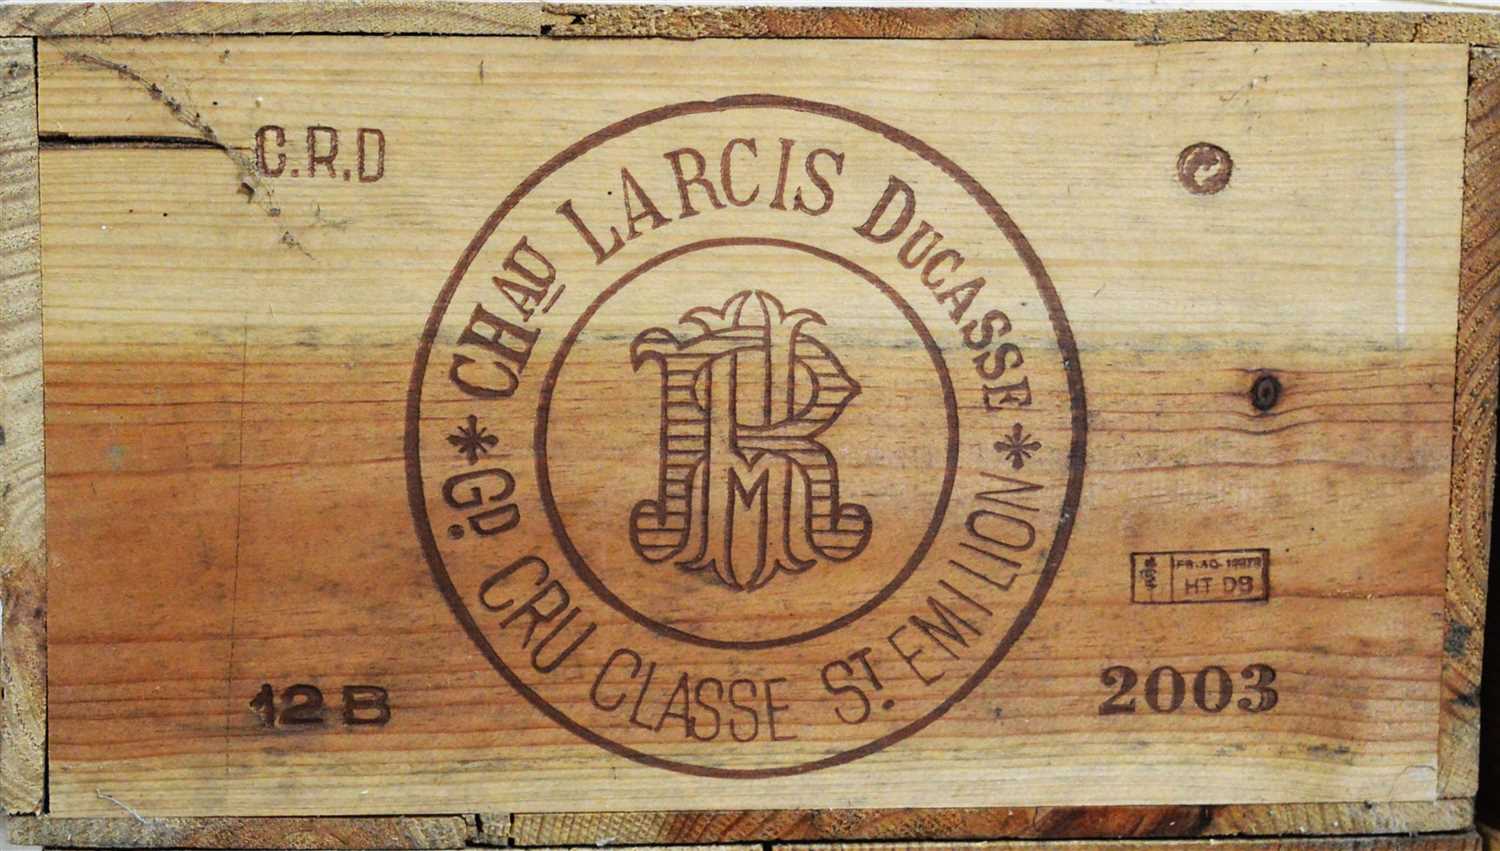 Lot 401 - Twelve bottles of Chateau Larcis Ducasse.